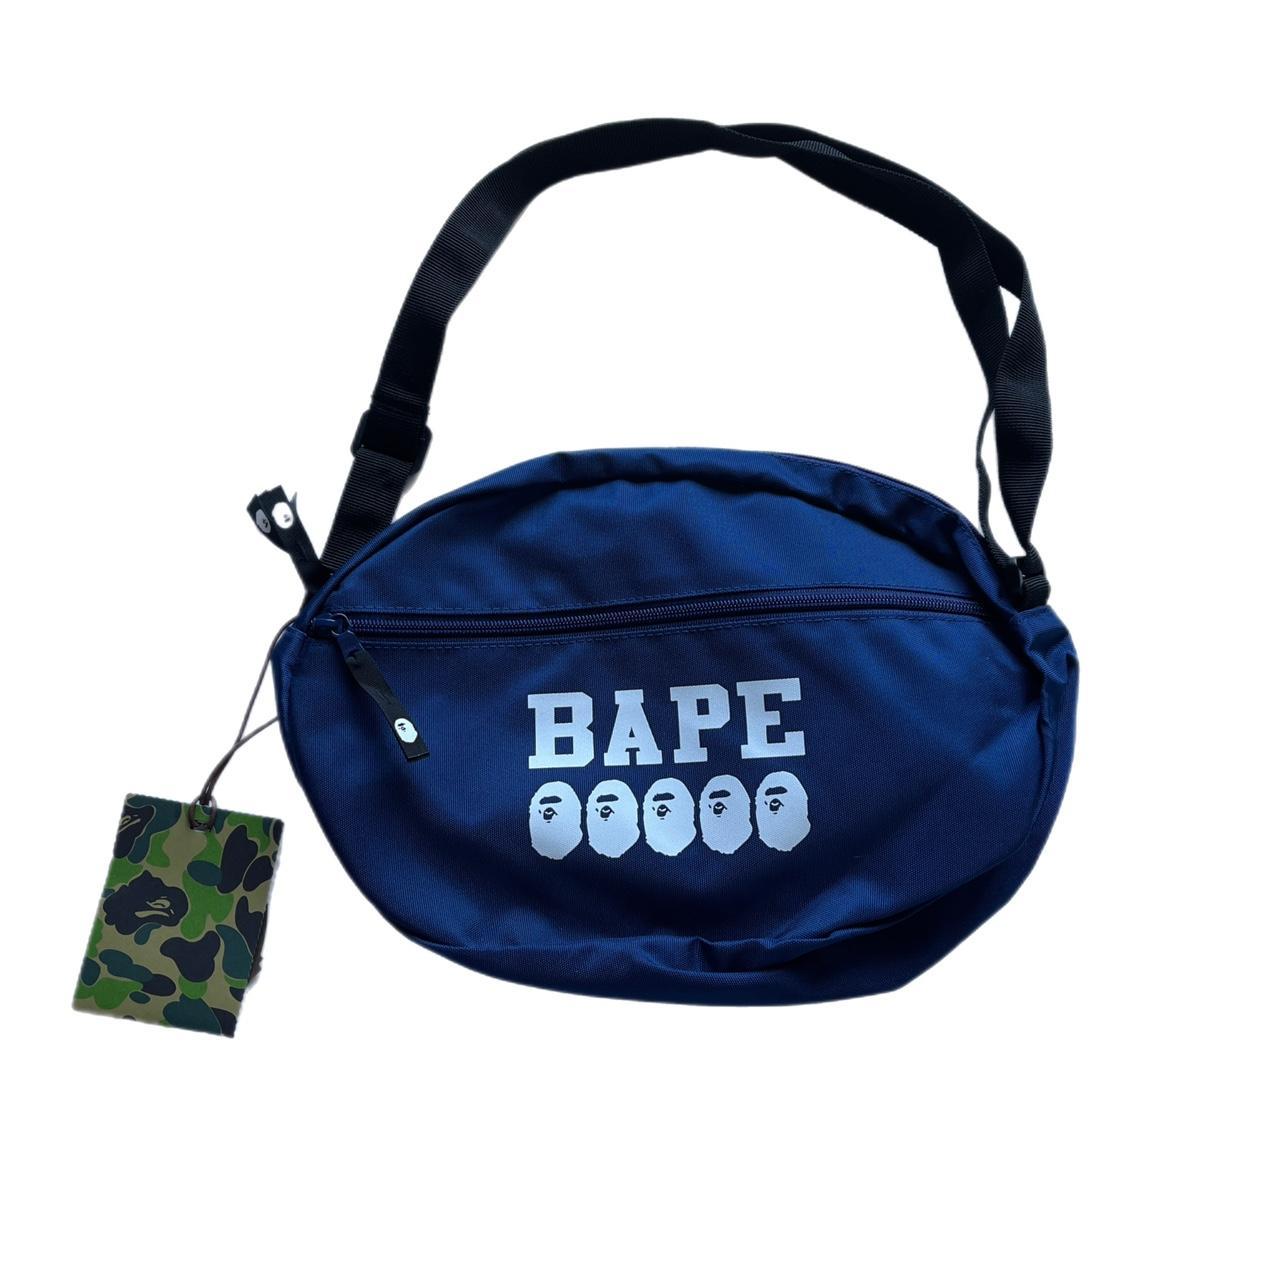 Bape Bape Shoulder Bag